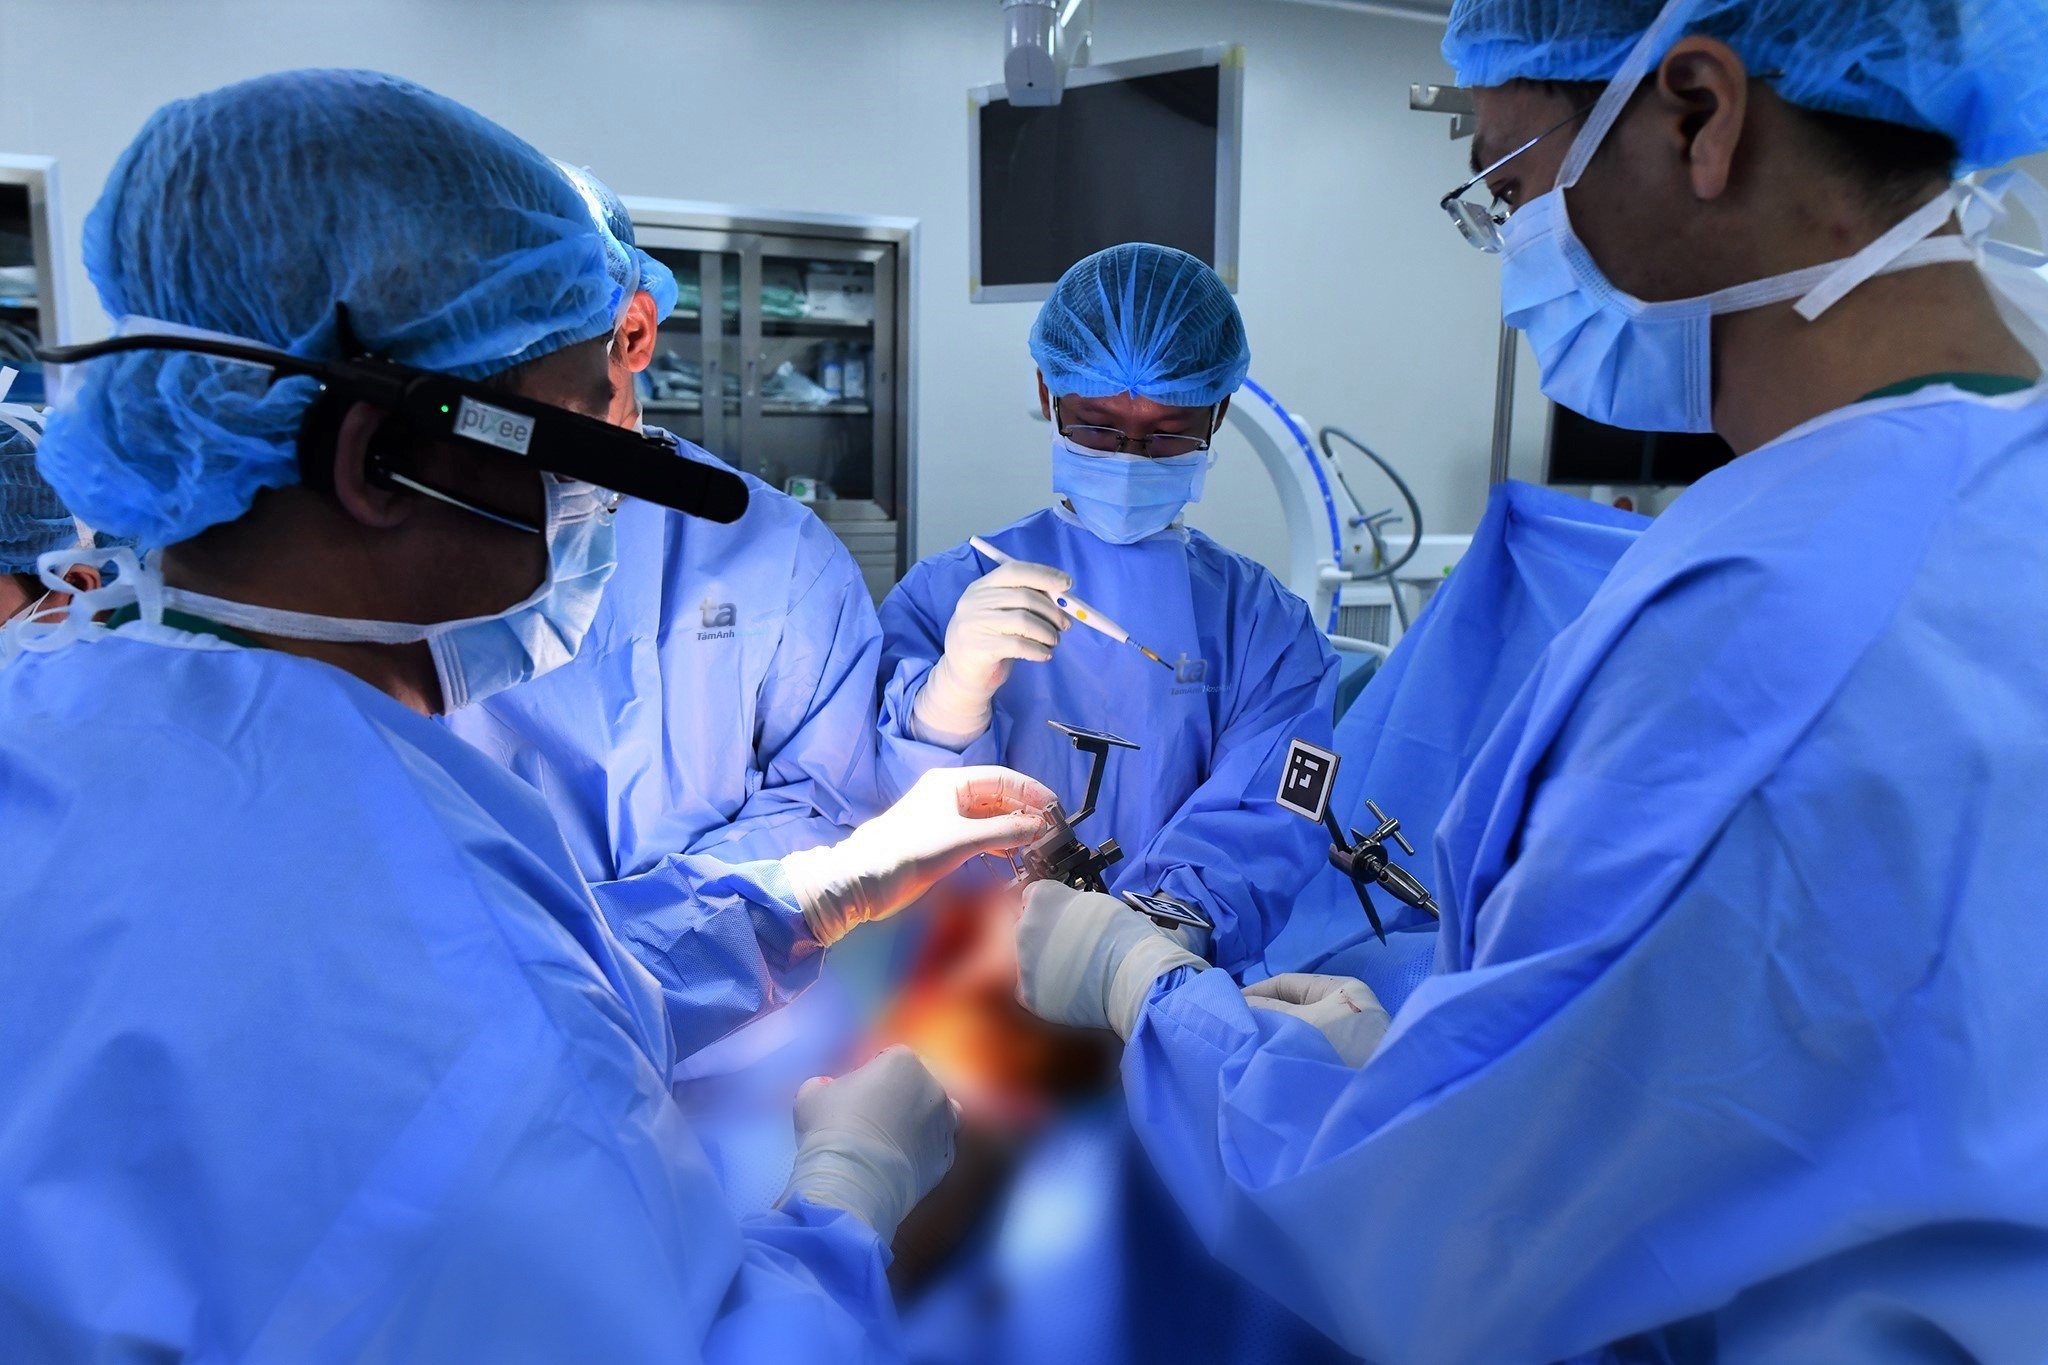 Ứng dụng công nghệ thực tế ảo trong phẫu thuật thay khớp gối